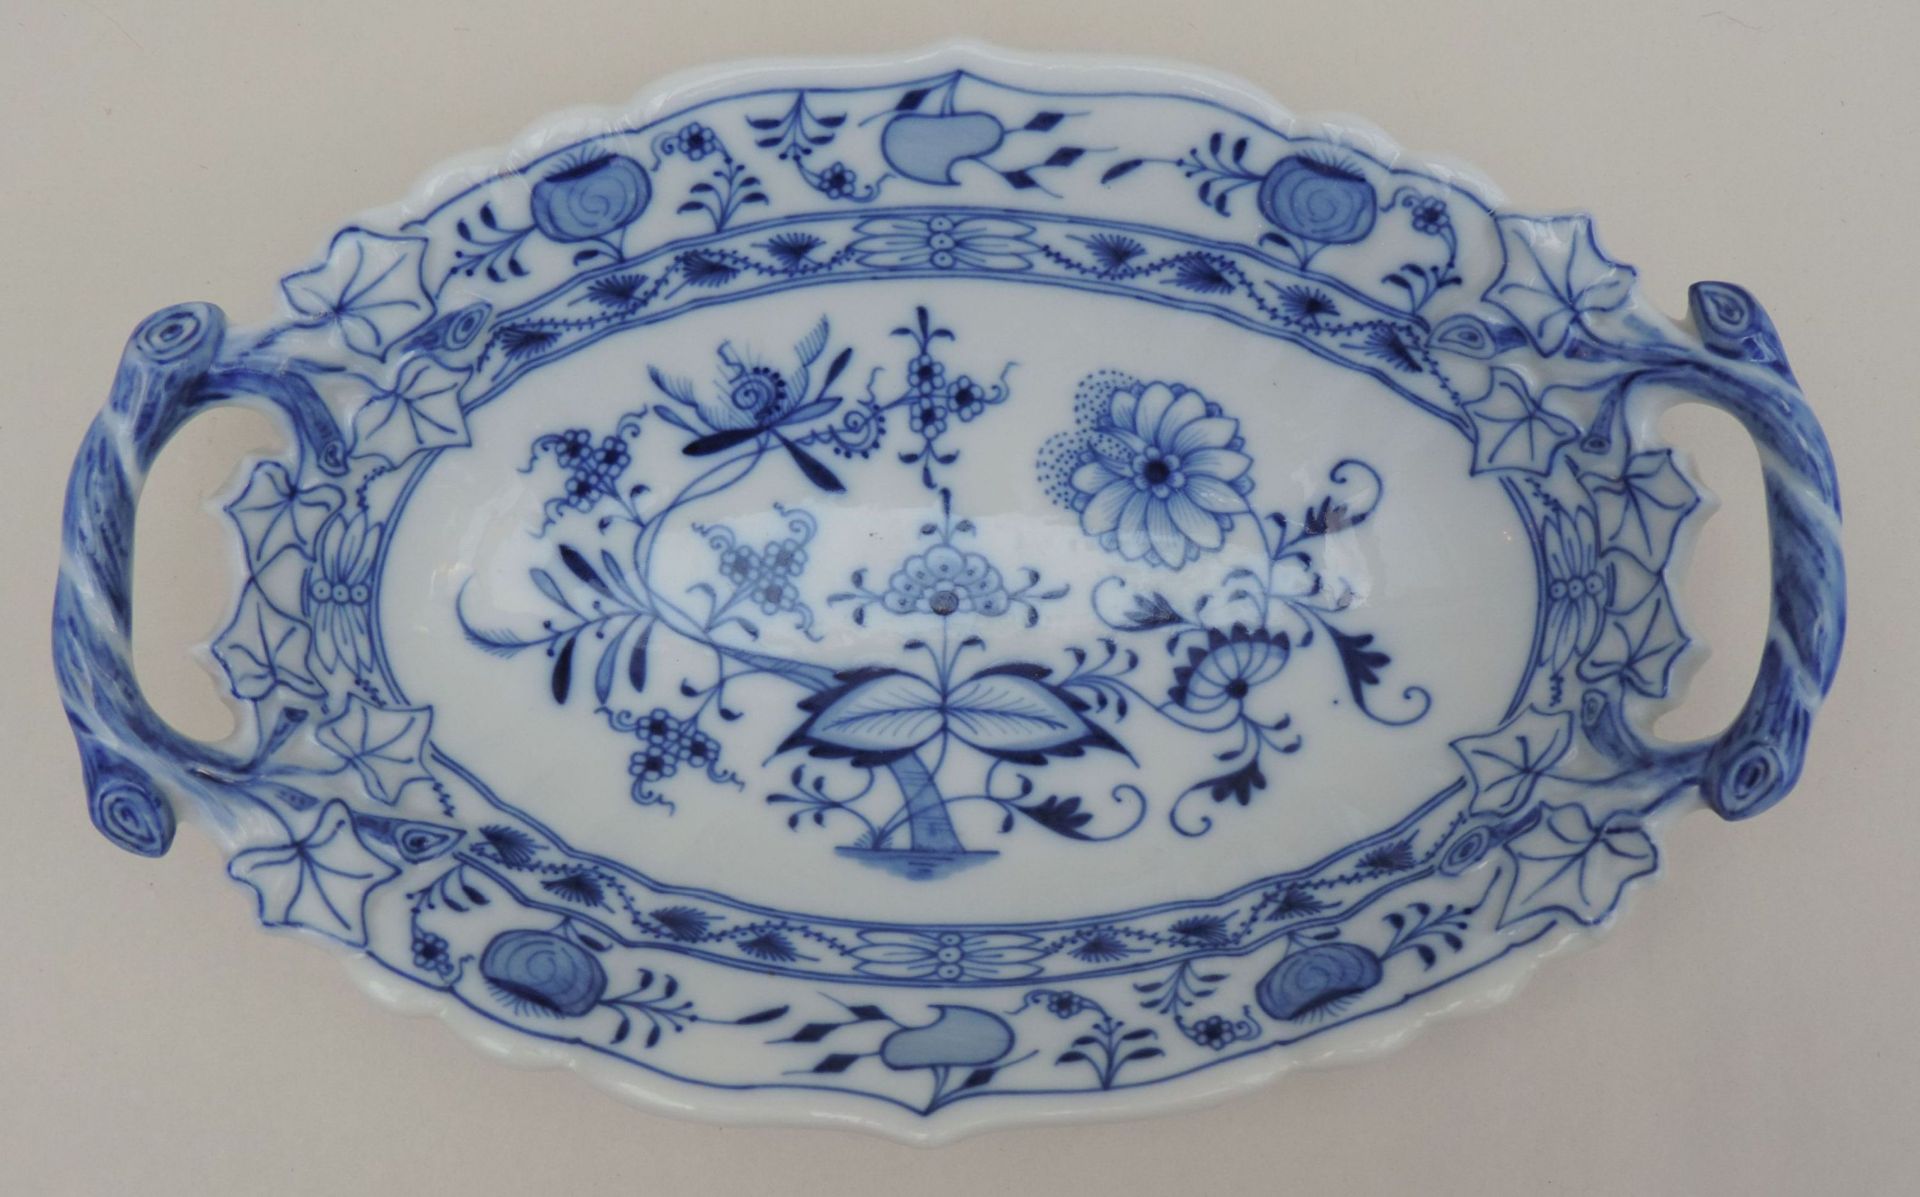 GONDELSCHALE, Meissen, Manuf Teichert, 1865-1912, blau, Bleu Ordinaire, sog, Zwiebelmuster, - Bild 2 aus 3